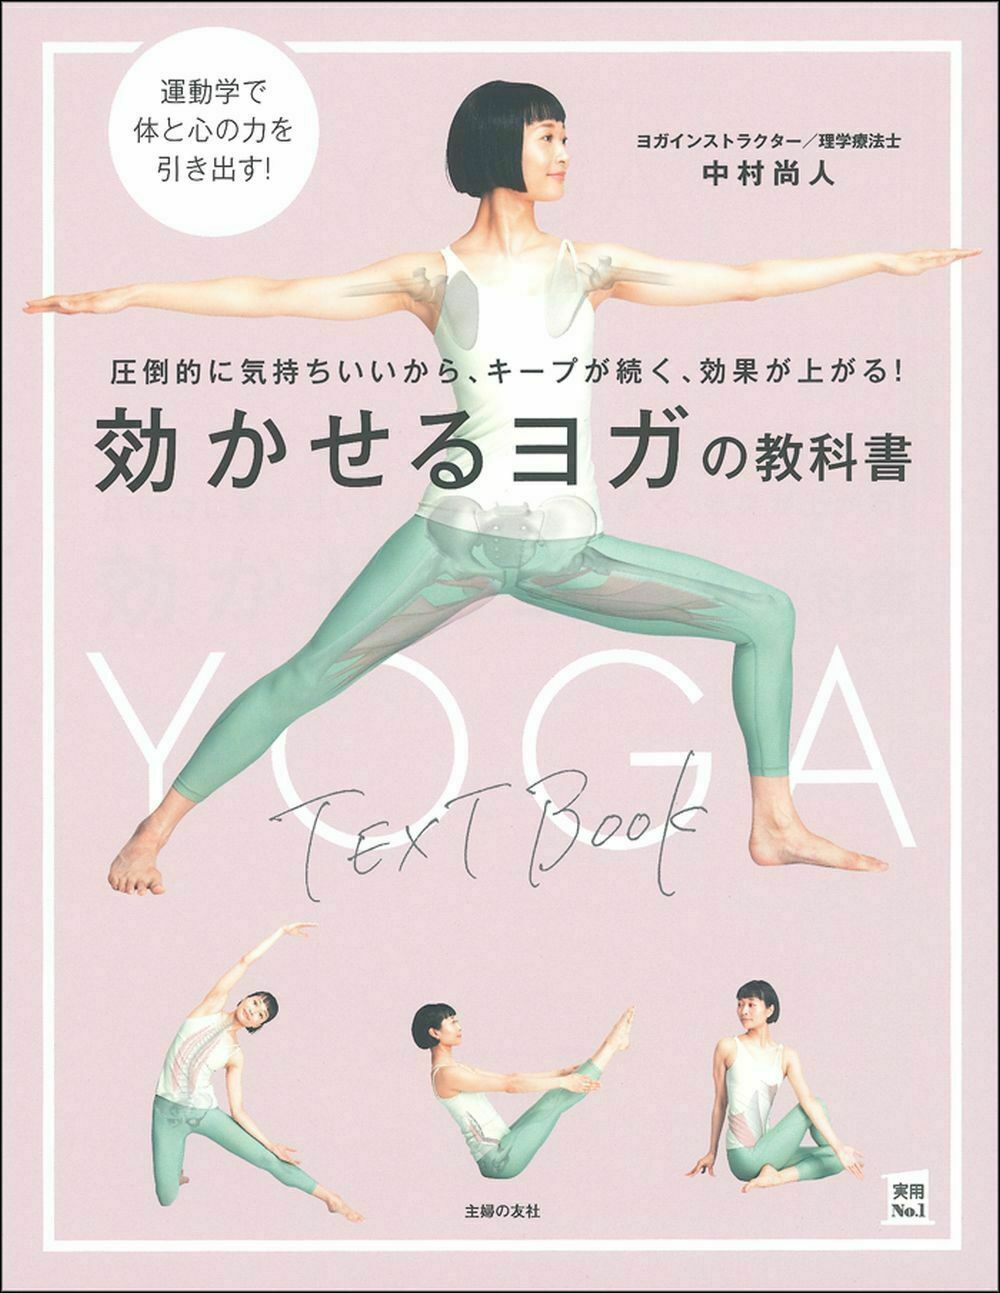 ヨーガのための解剖学 Anatomy for Yoga DVD | www.bumblebeebight.ca